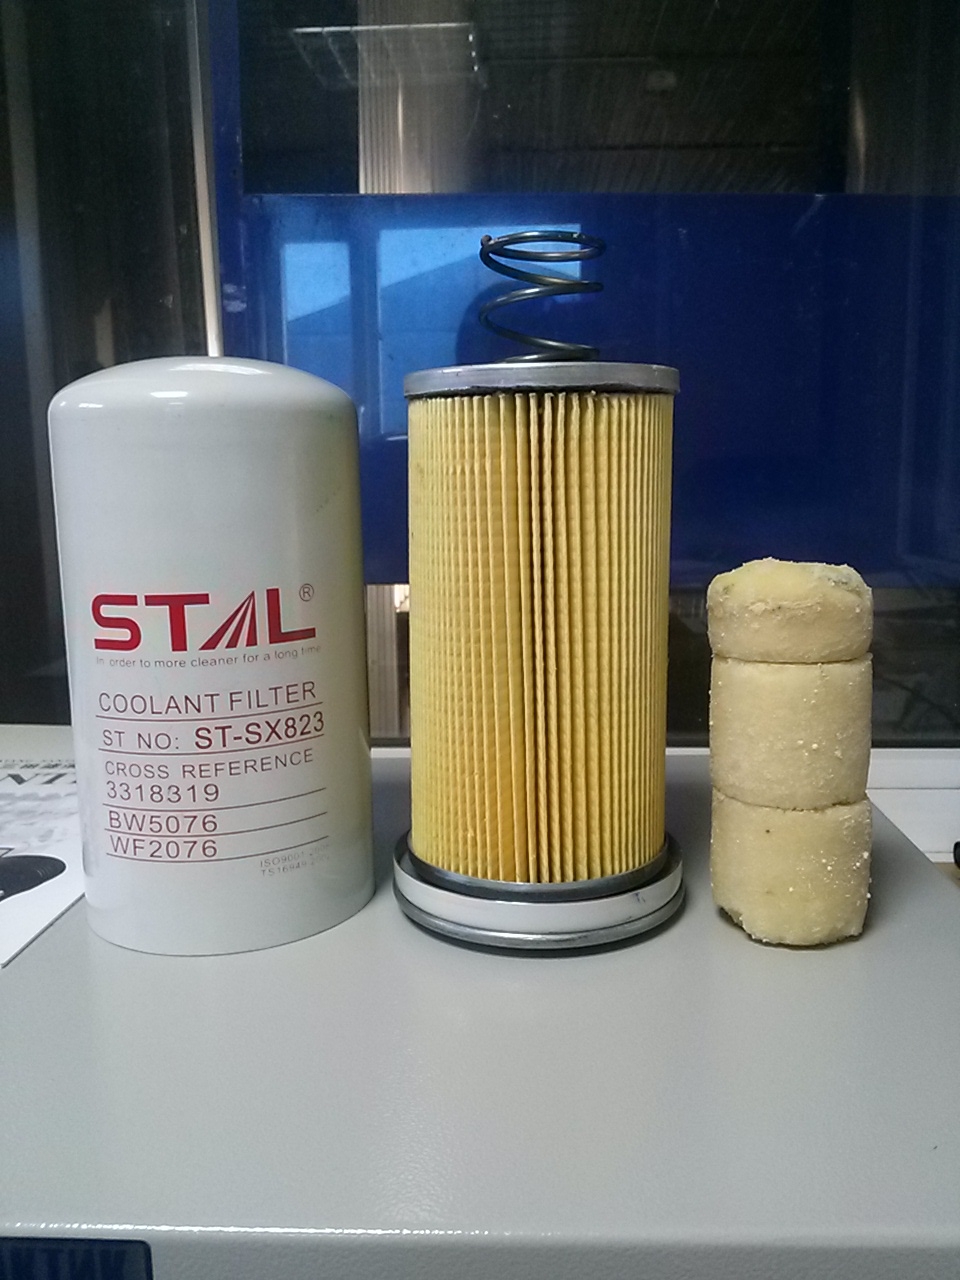 Stal product. Фильтр топливный ФТ-6138. Фильтр топливный сепаратор рс400-7 Komatsu. Sk3735 фильтр топливный грубой очистки.. Фильтр антикоррозийный 511002.